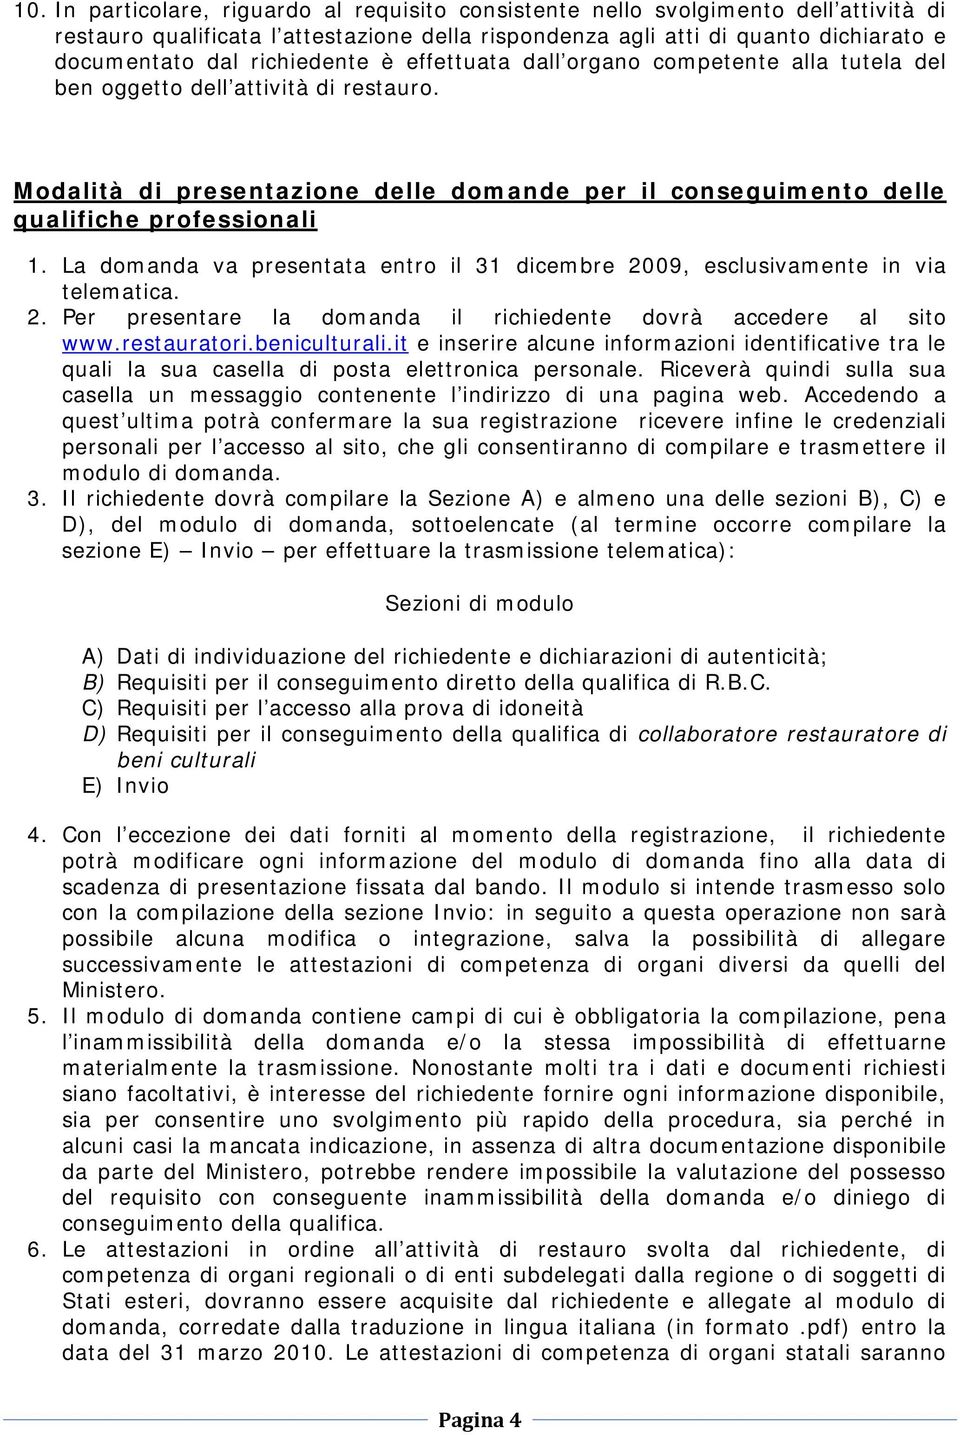 La domanda va presentata entro il 31 dicembre 2009, esclusivamente in via telematica. 2. Per presentare la domanda il richiedente dovrà accedere al sito www.restauratori.beniculturali.